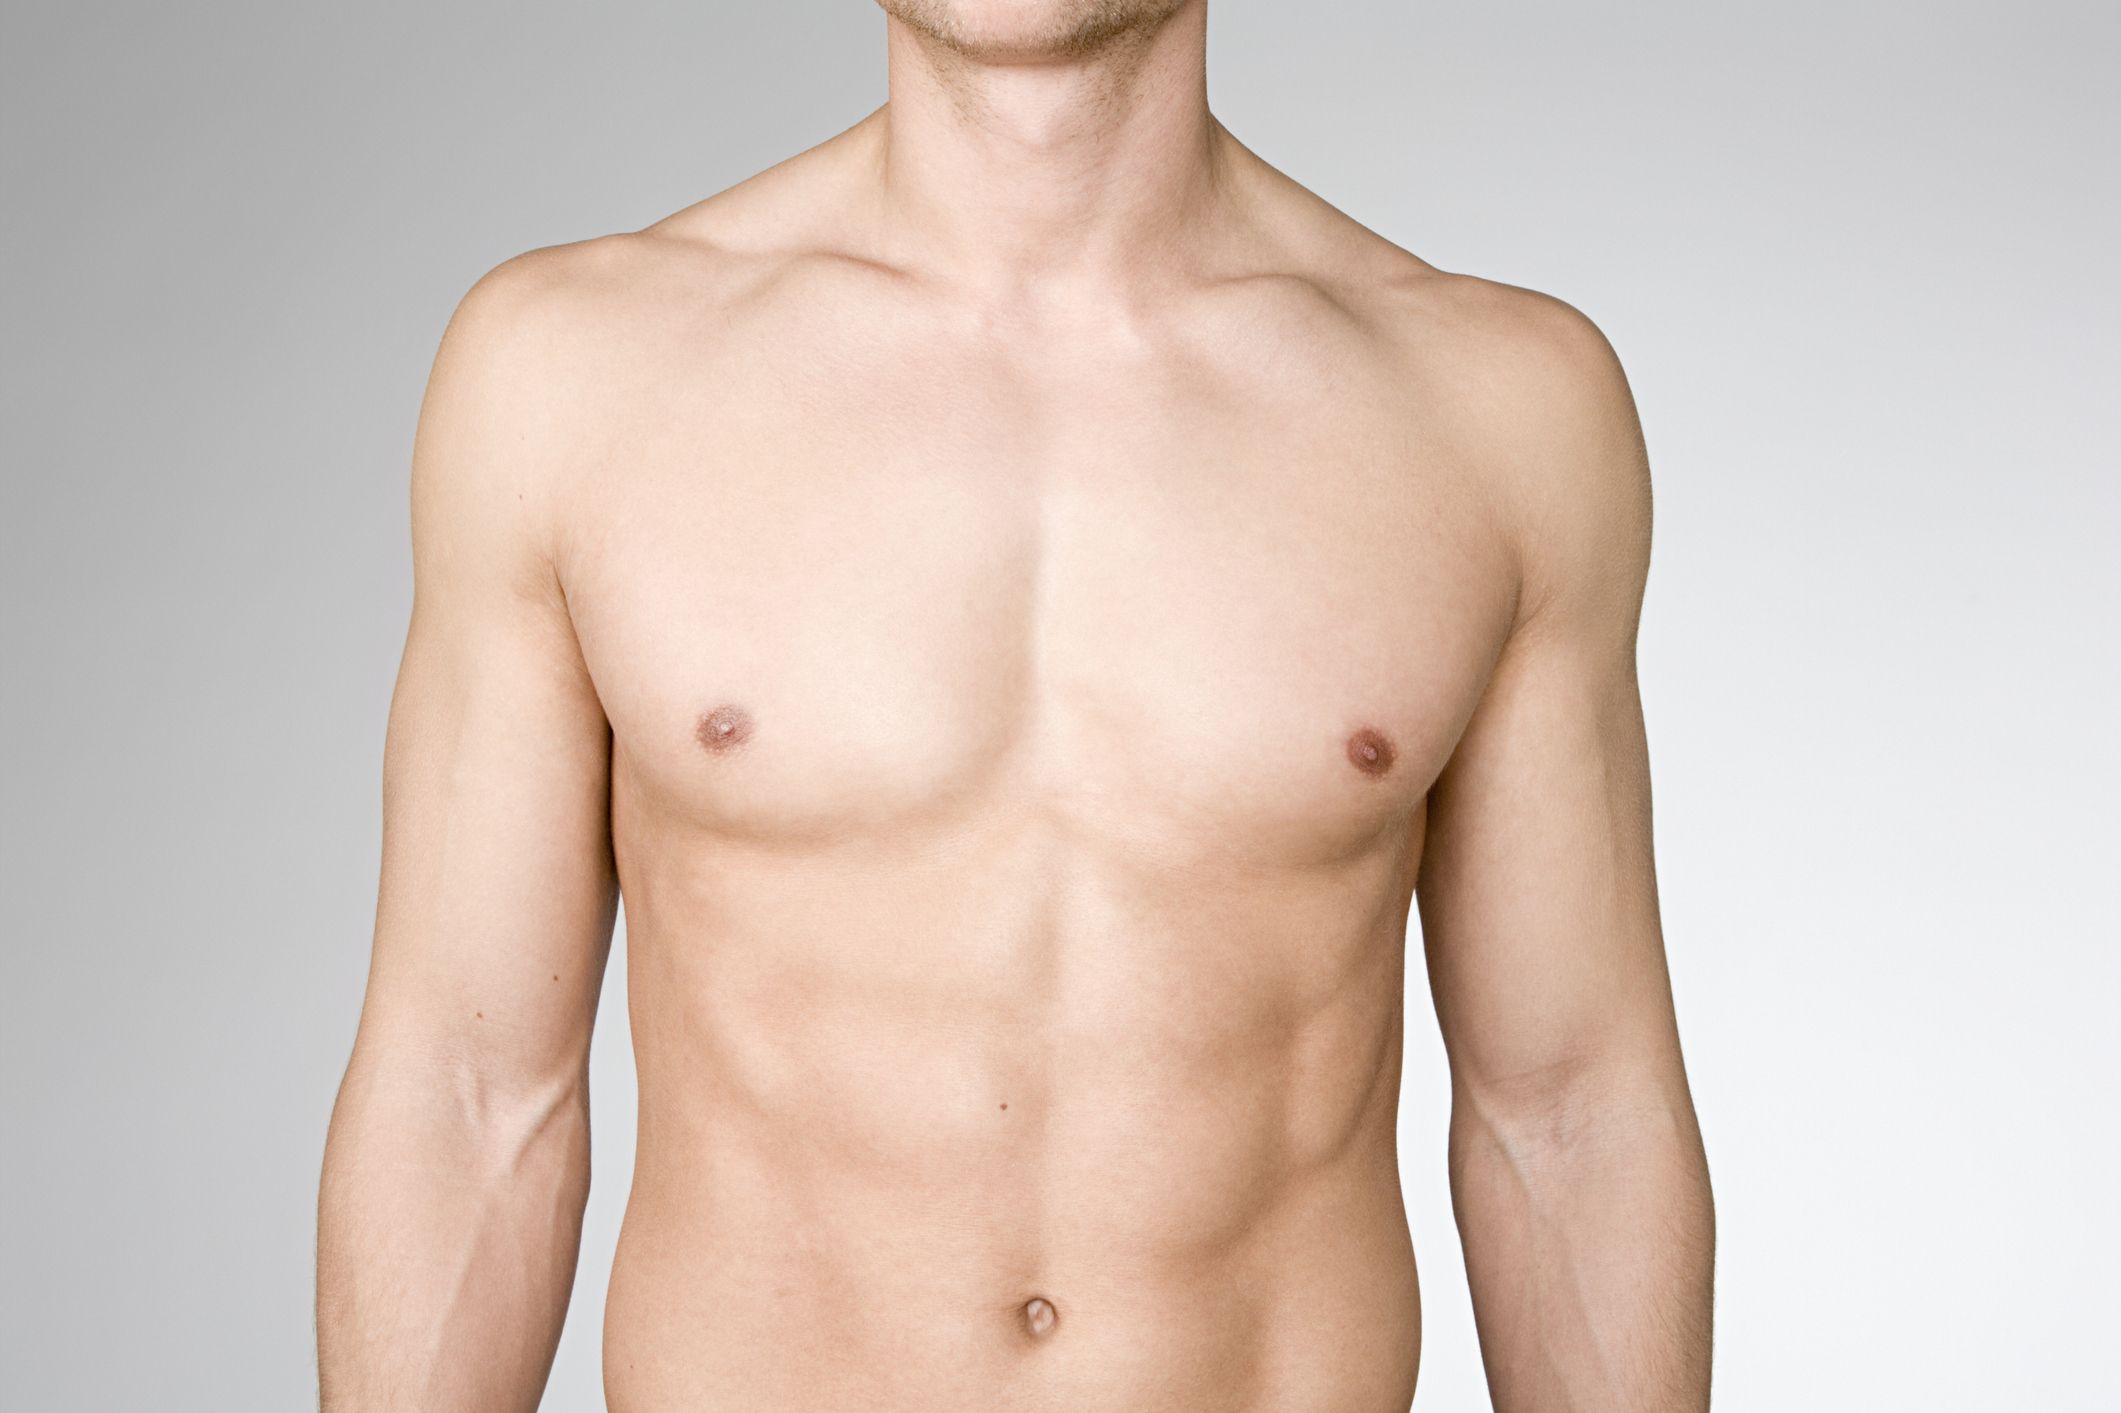 Male nipple